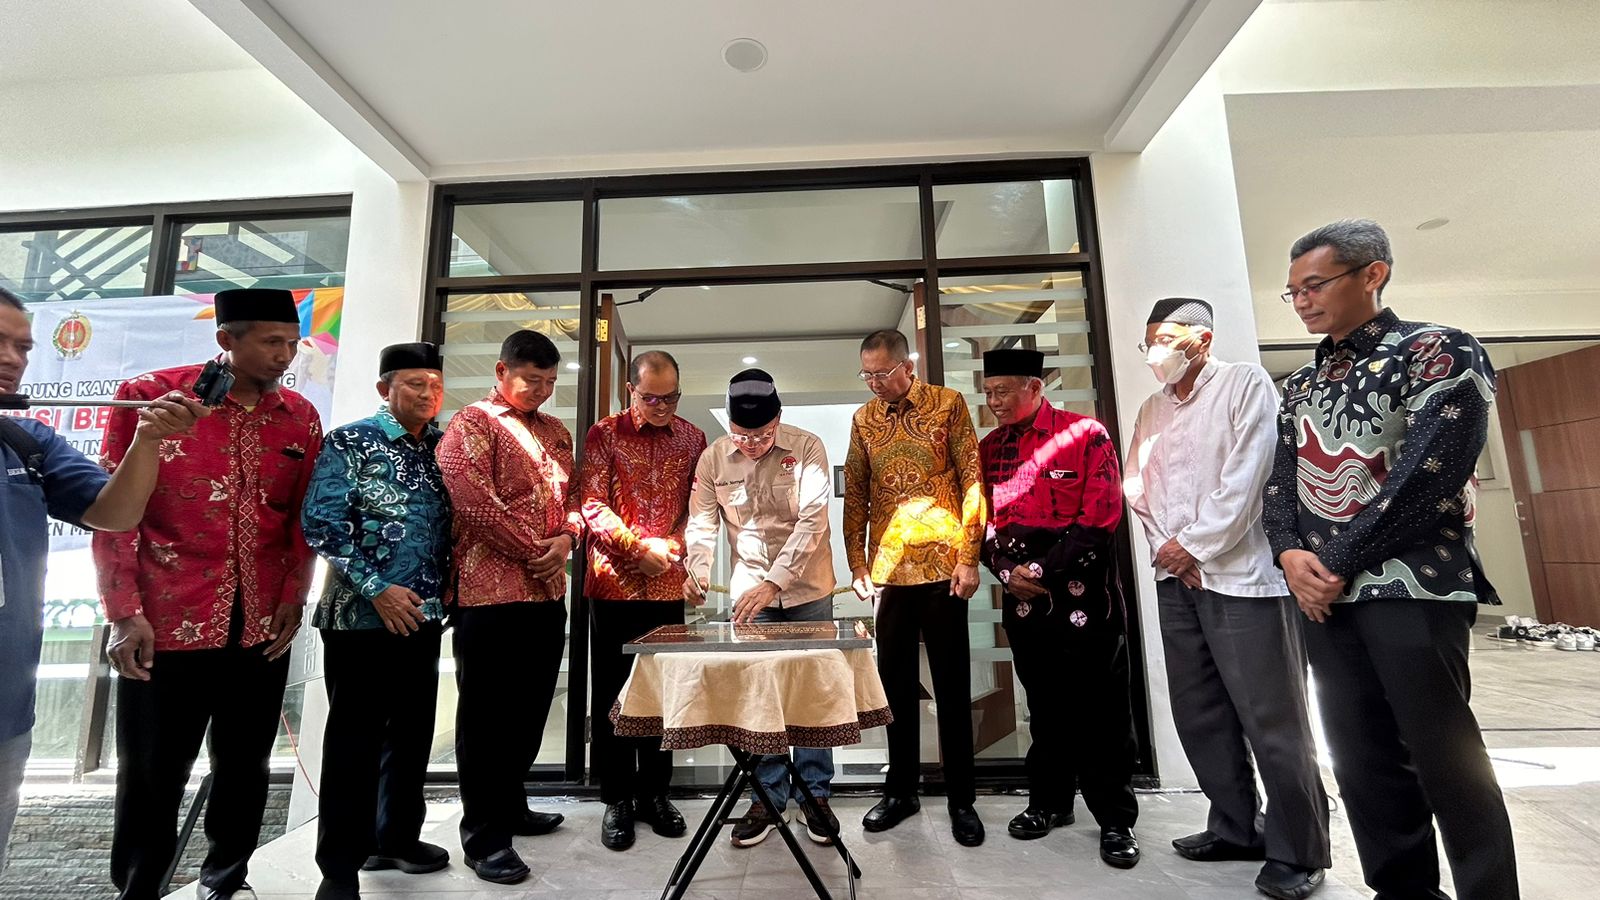 Resmikan Gerai Informasi Bengkulu di Yogyakarta, Gubernur Rohidin Berharap Masyarakat Dapat Keistimewaan Yogja